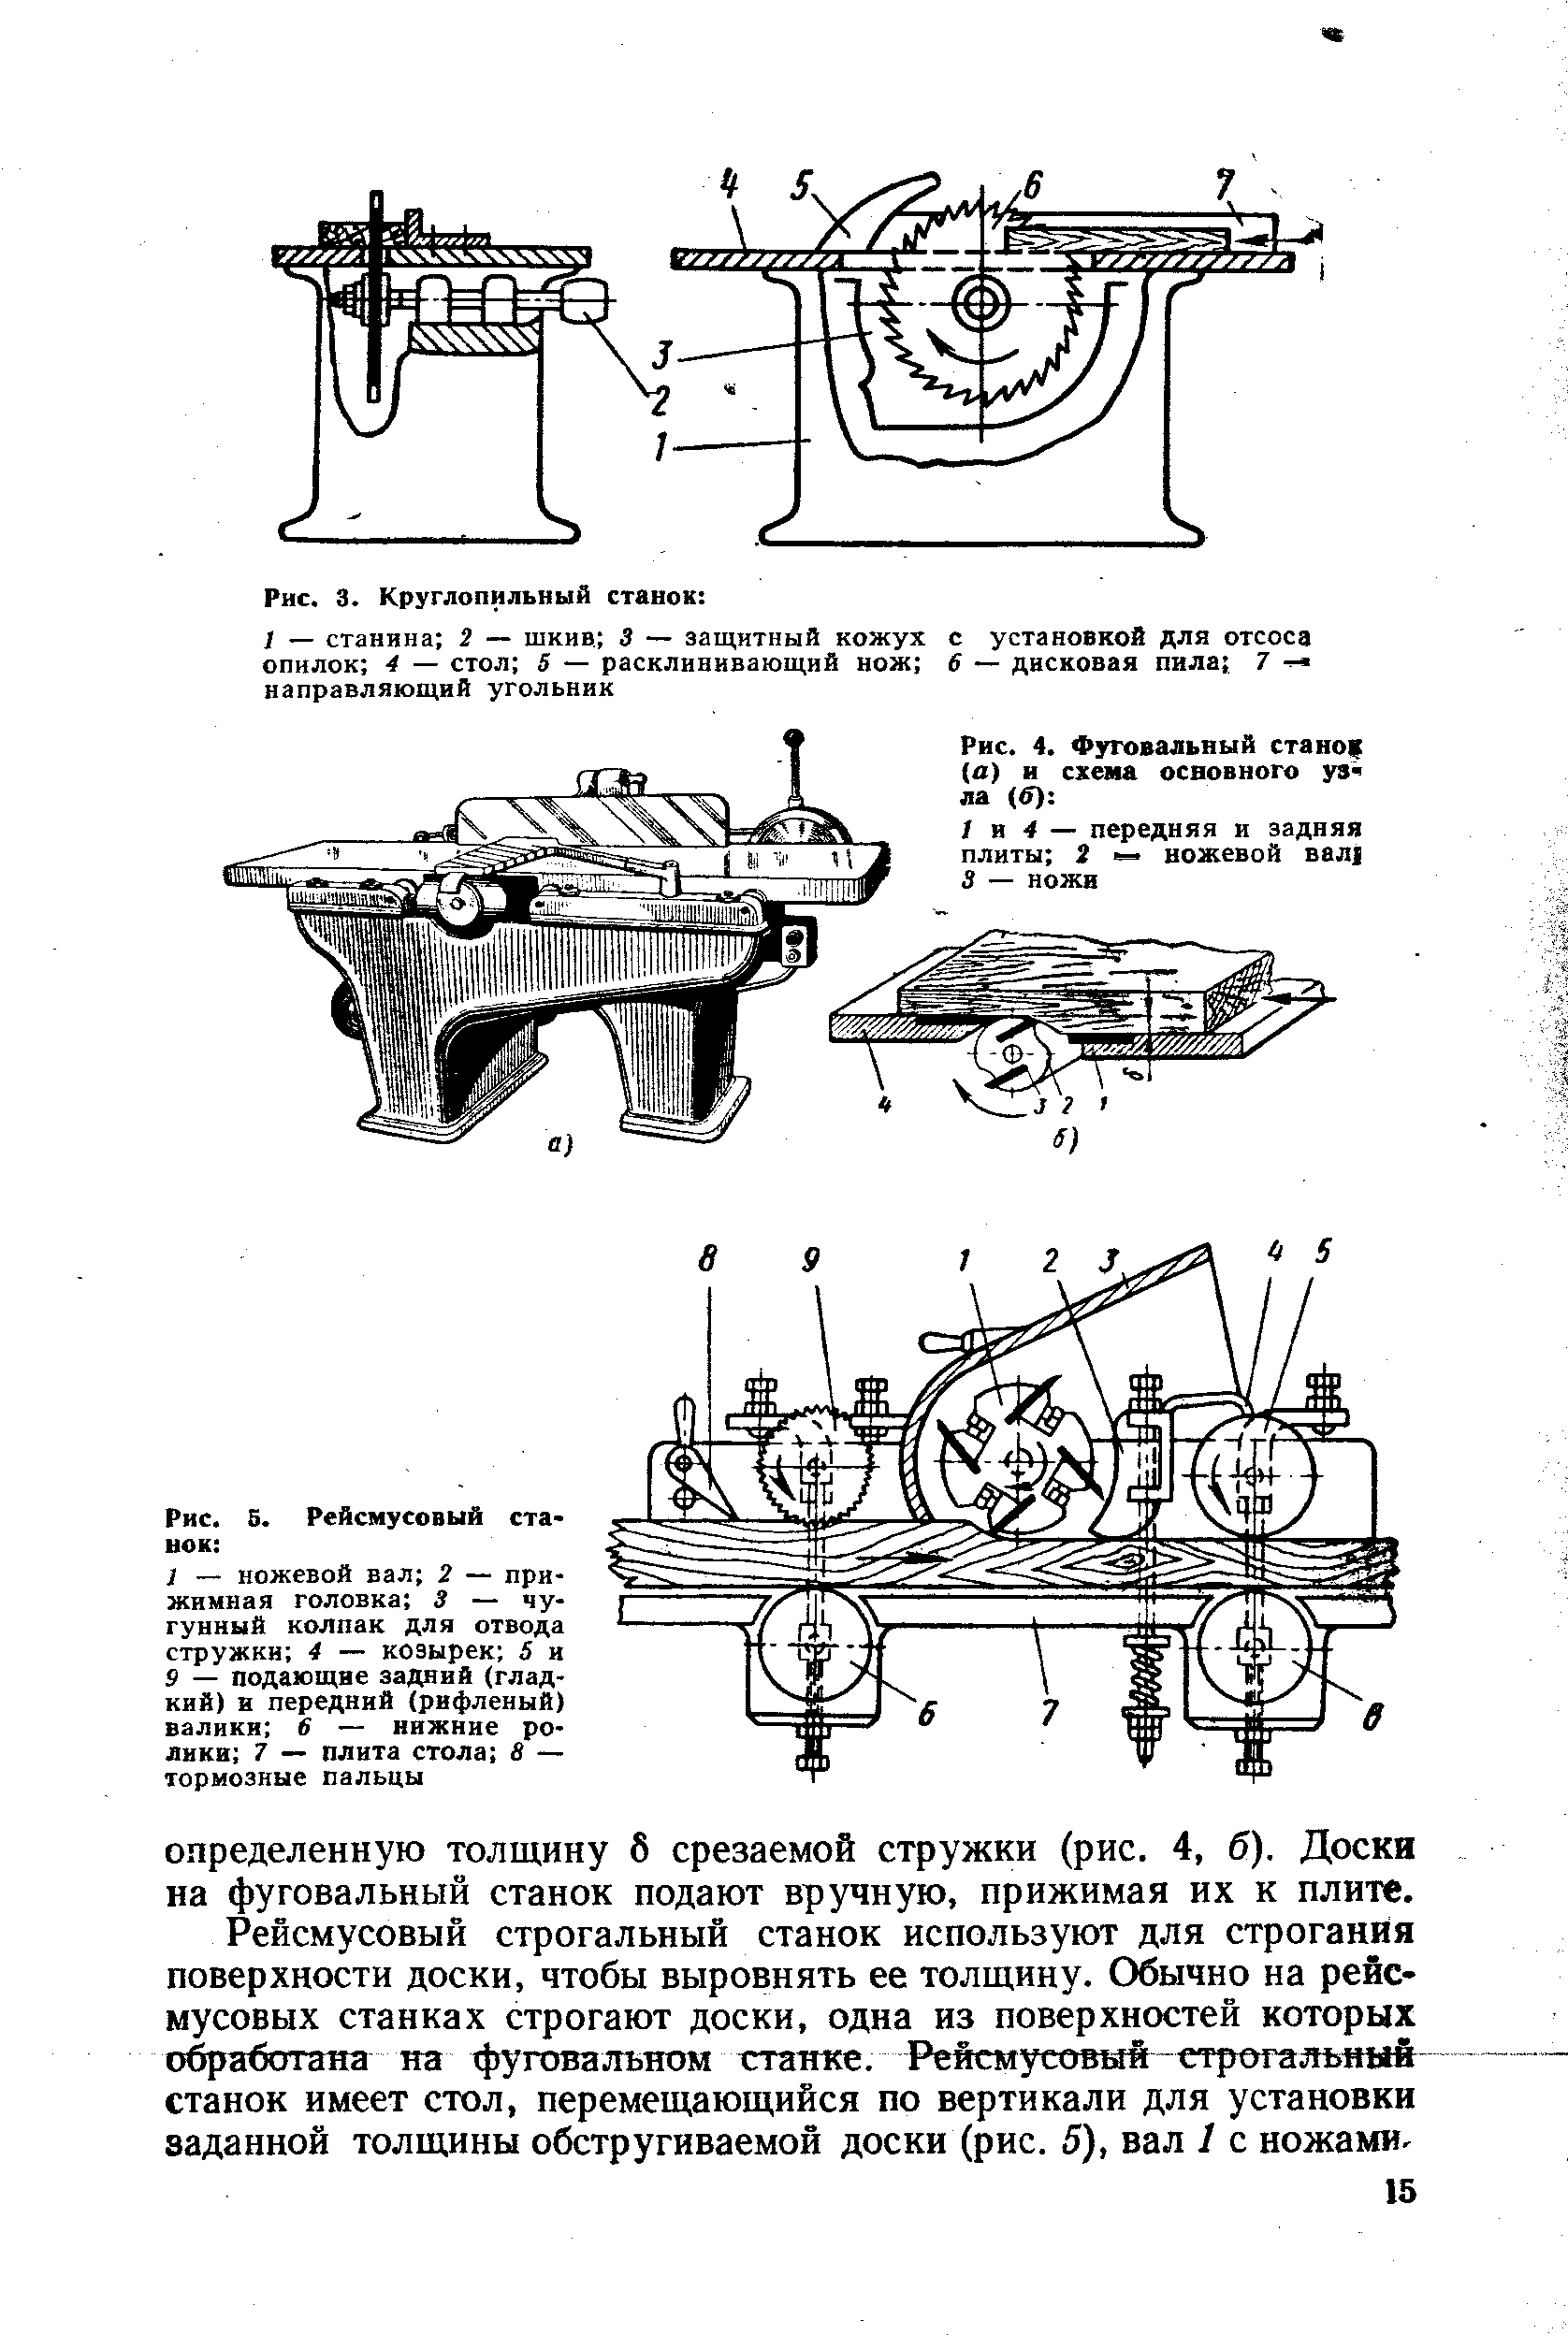 Схема устройства фуговального рейсмусового станка